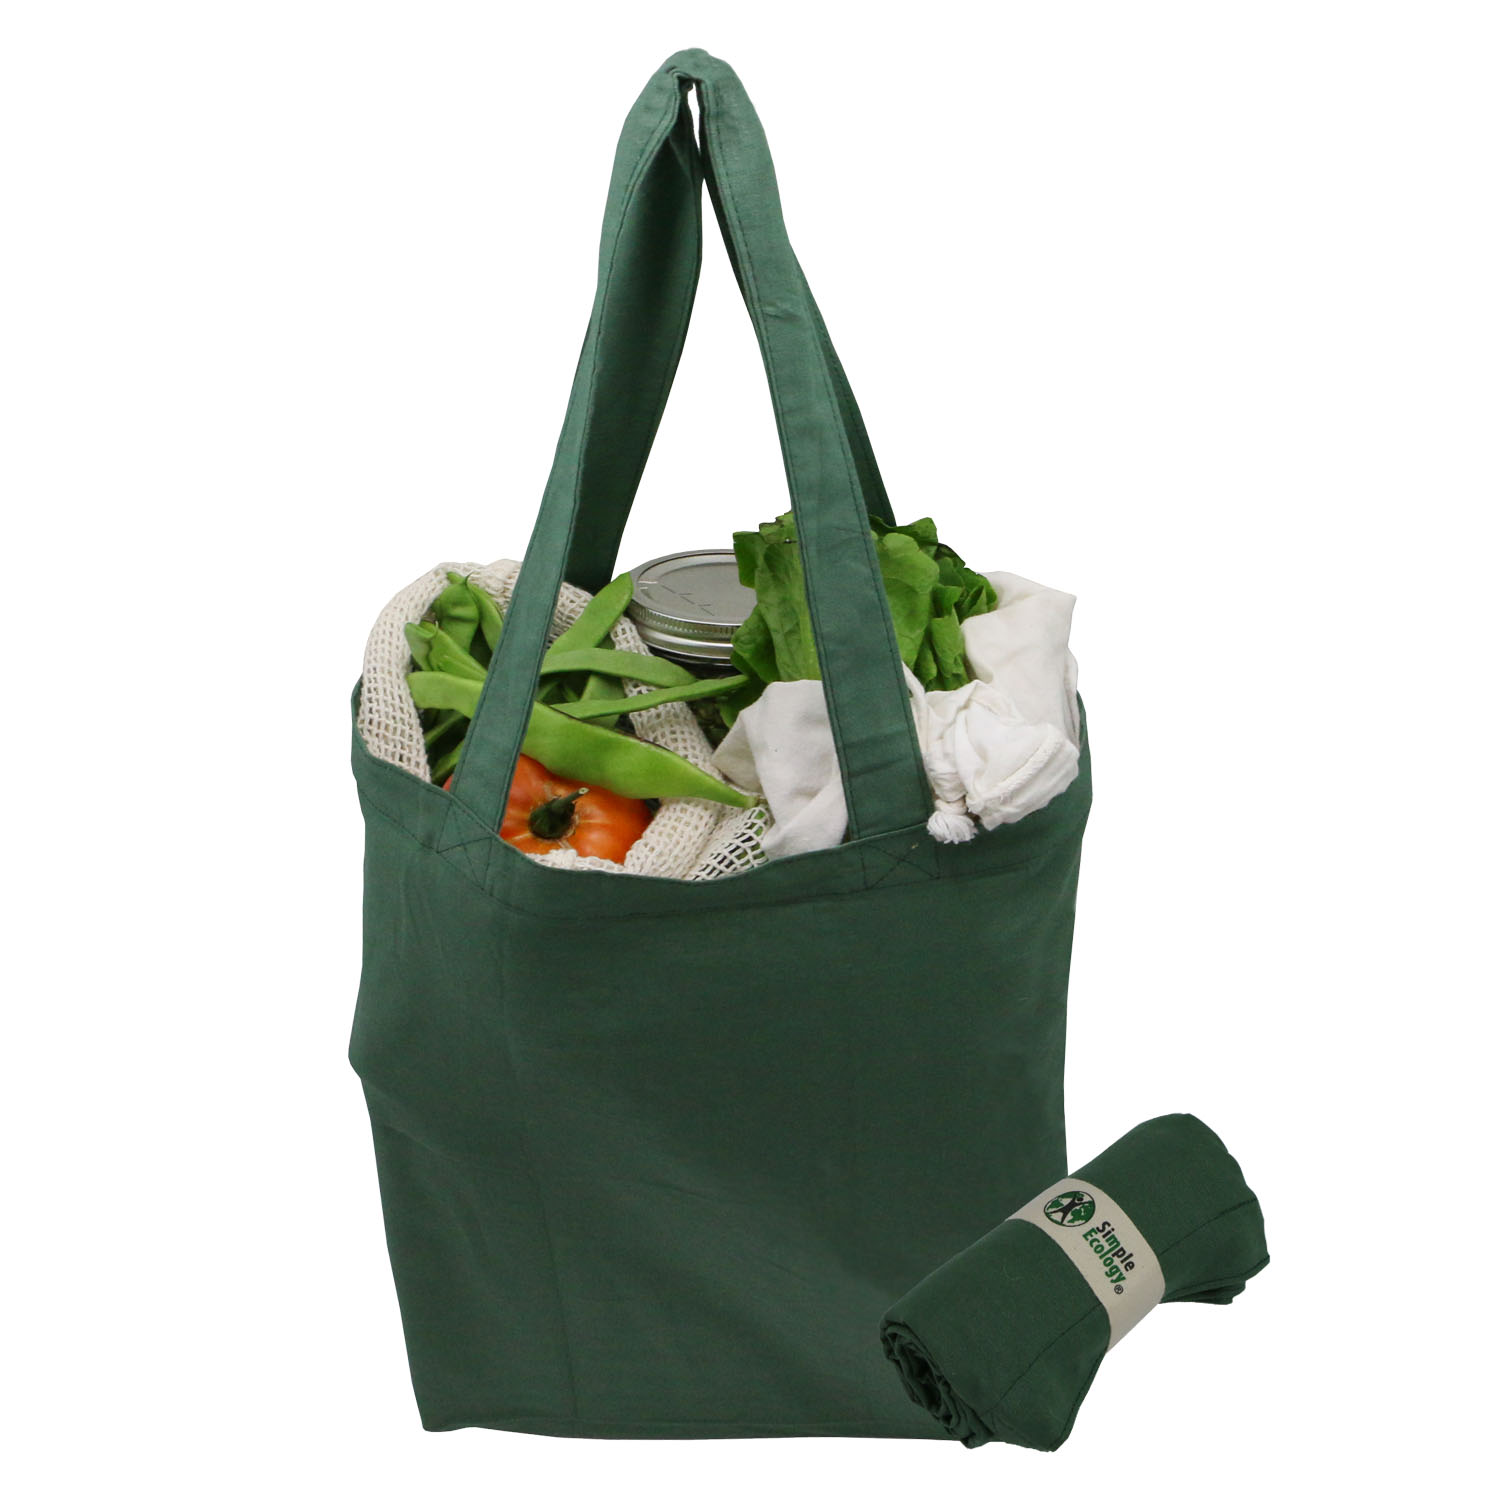 Foldable Shopping Reusable Bags Eco Grocery Bag Storage Tote Handbags KV 